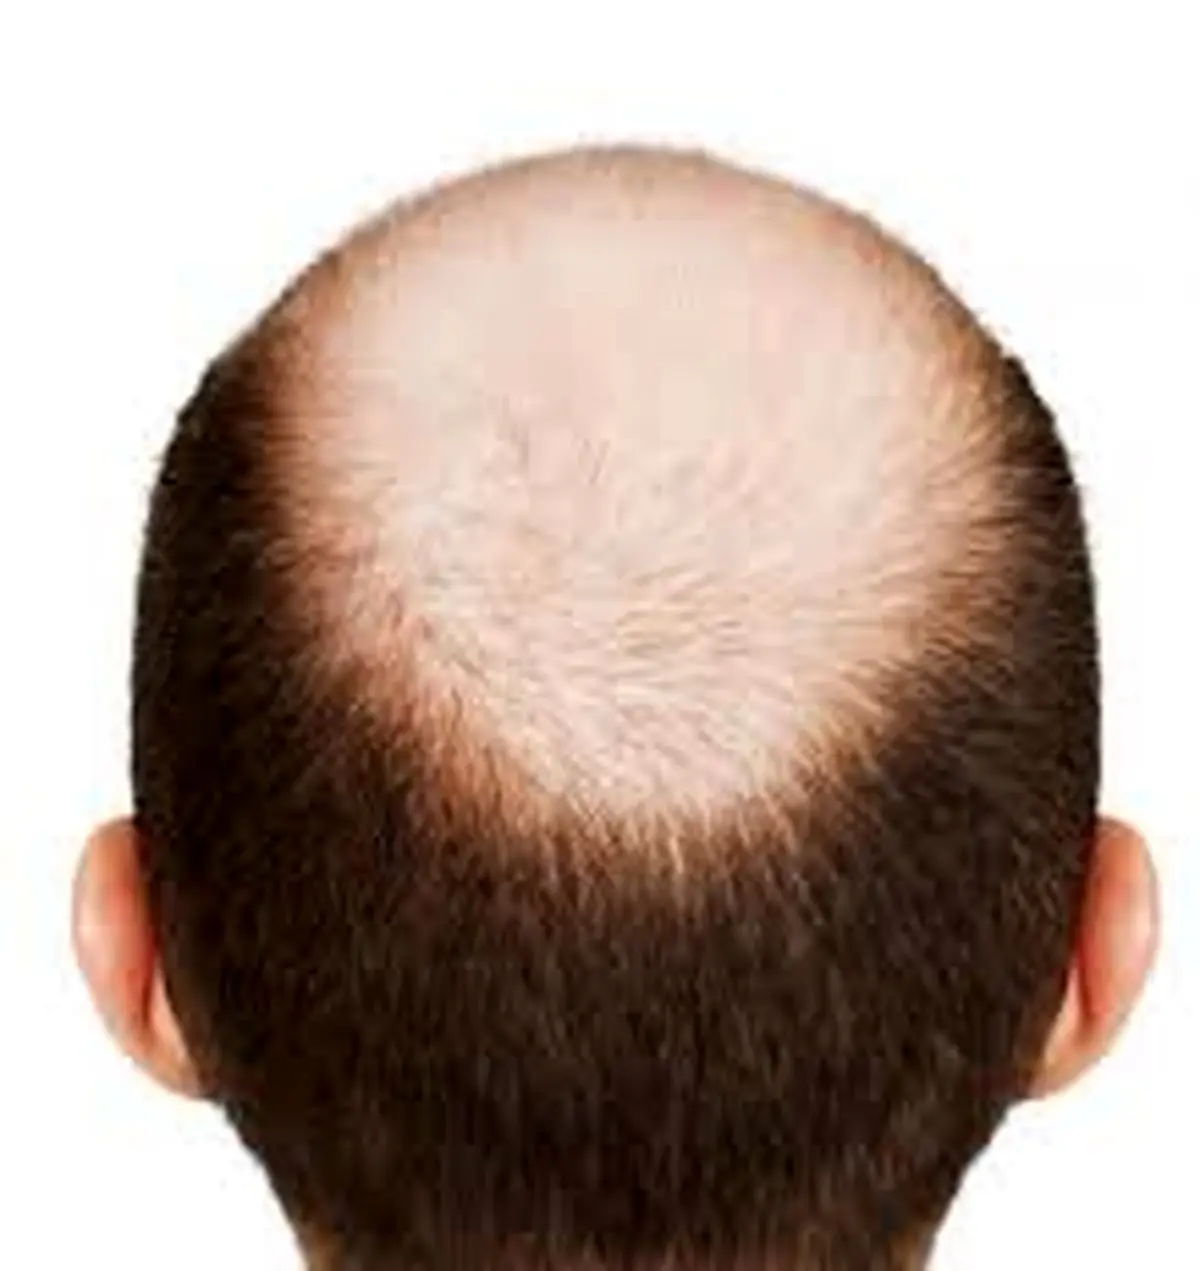 پیاز برای درمان طاسی سر؛10 روش موضعی برای تحریک رشد مو